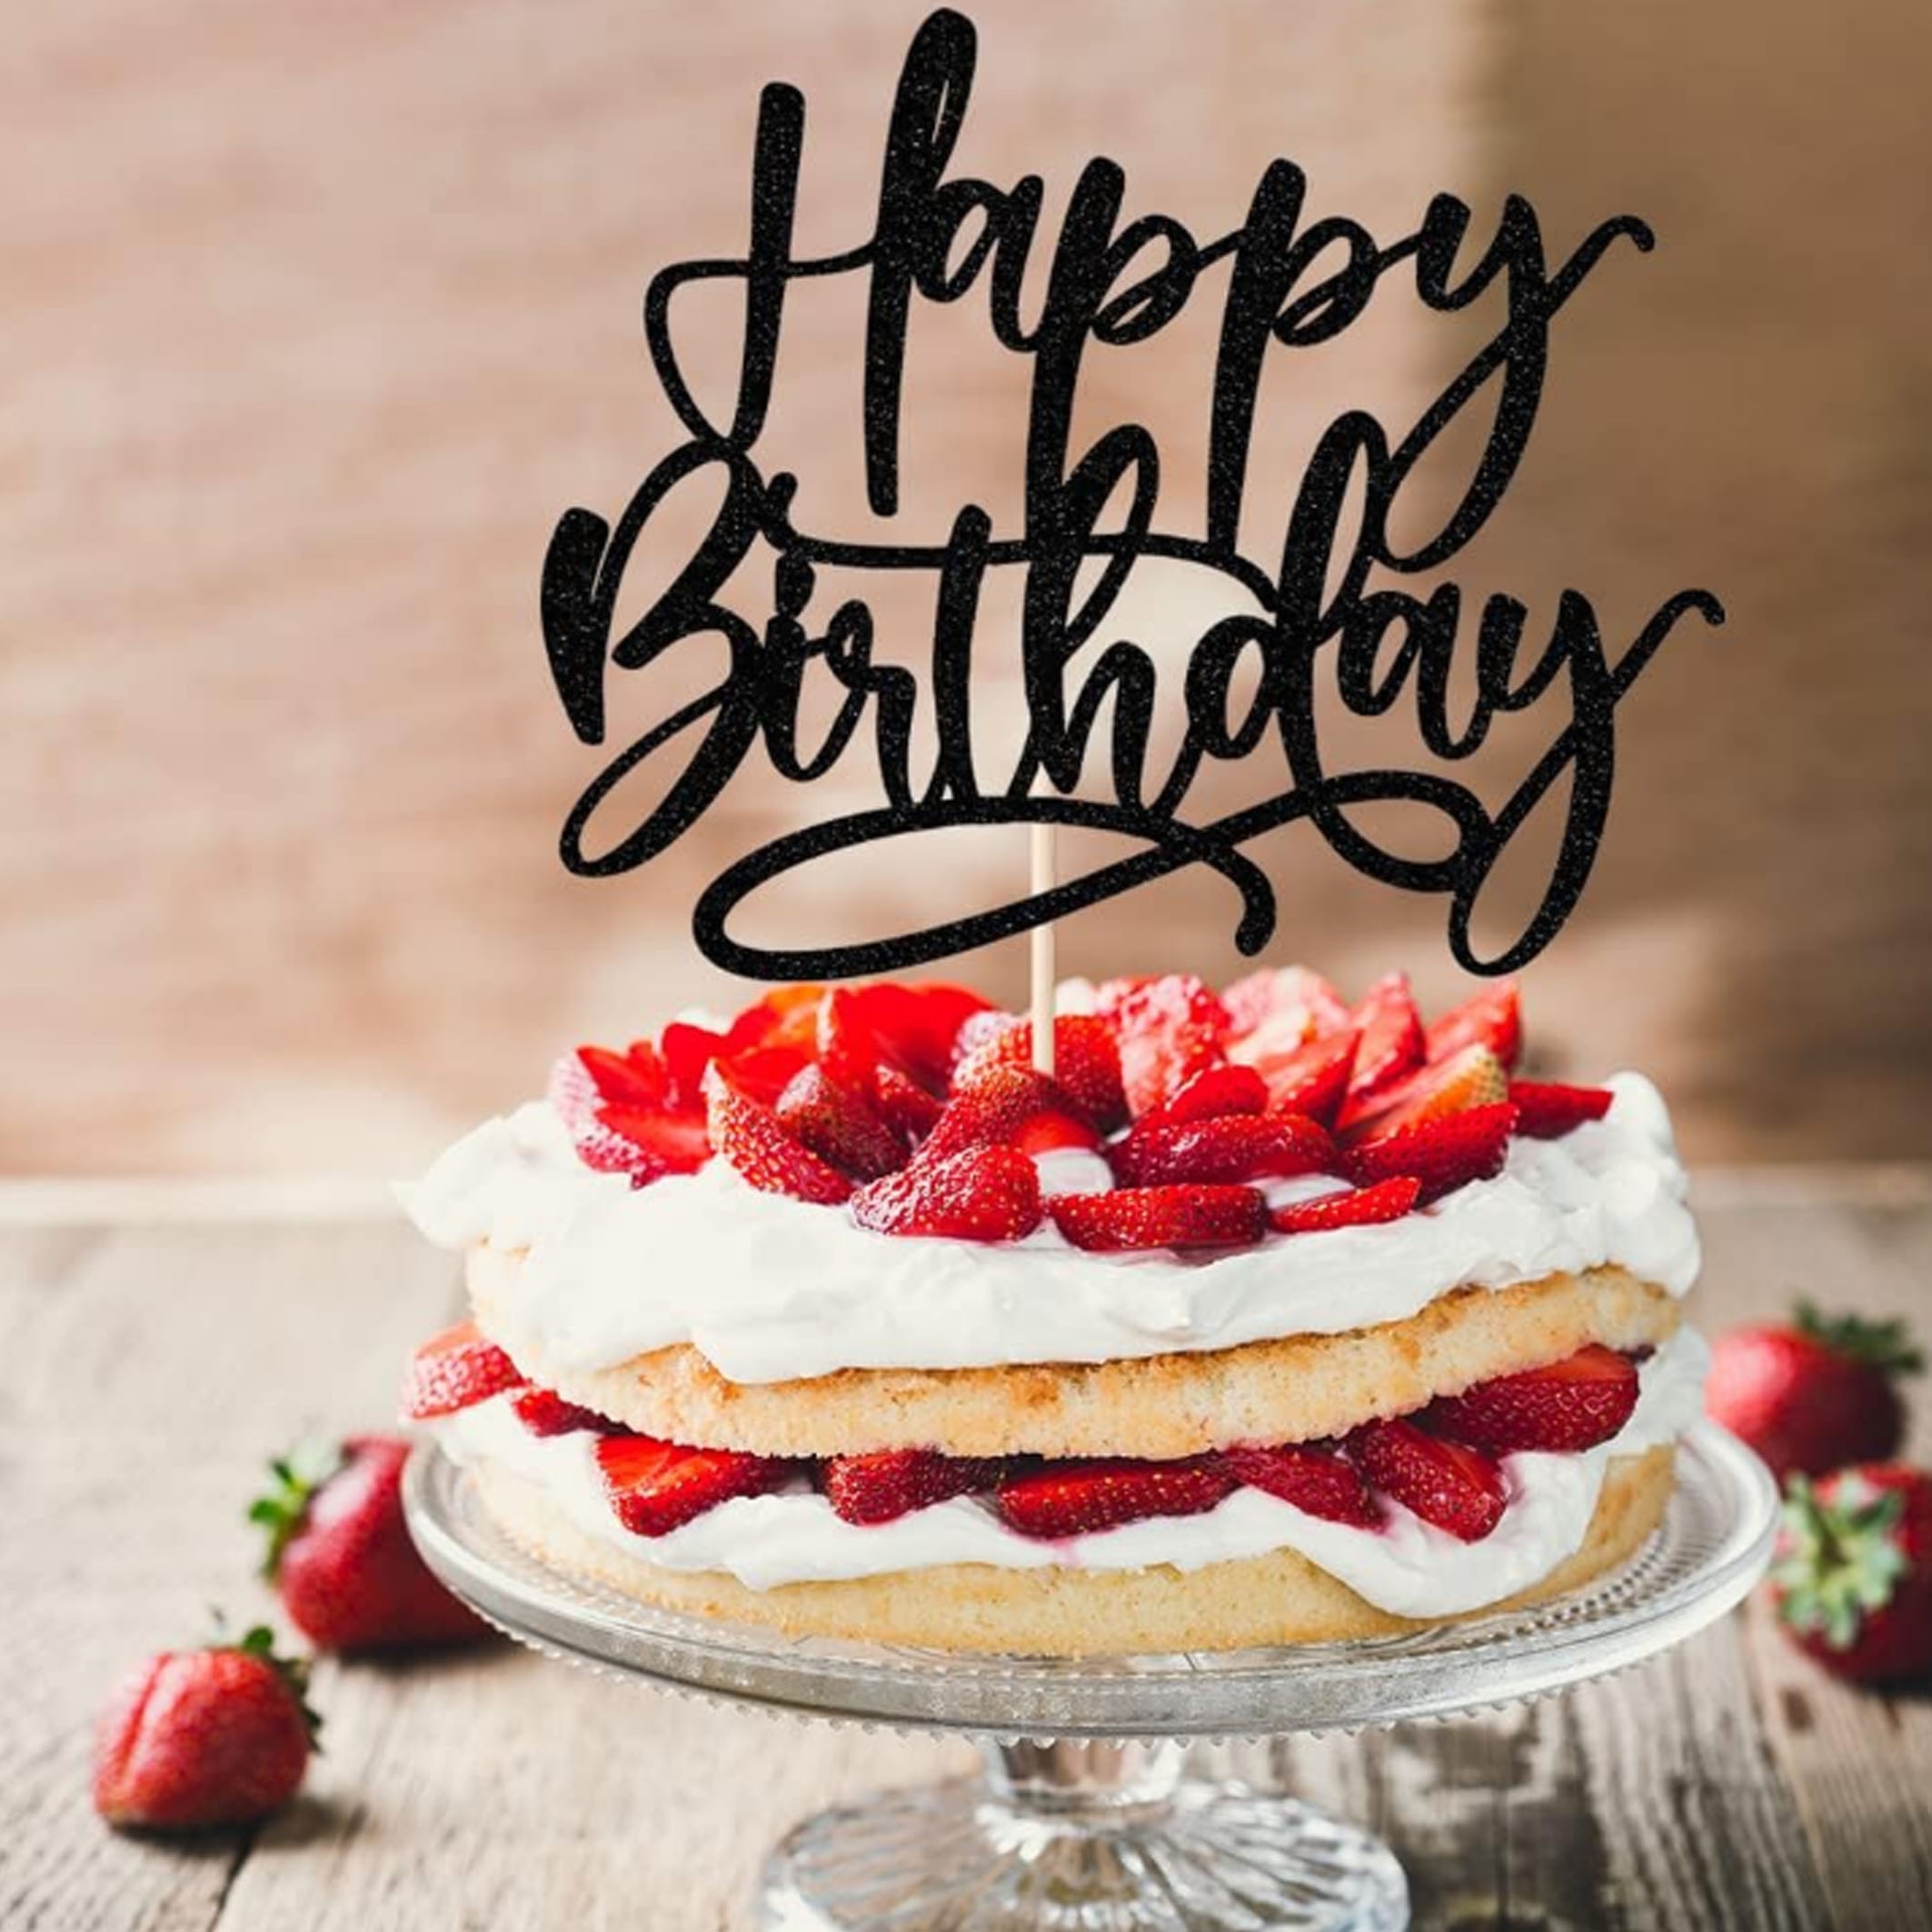 Decoración para tartas de feliz cumpleaños 13, 1 unidad, celebraciones de  cumpleaños, decoración de fiesta, decoración con purpurina (rojo)